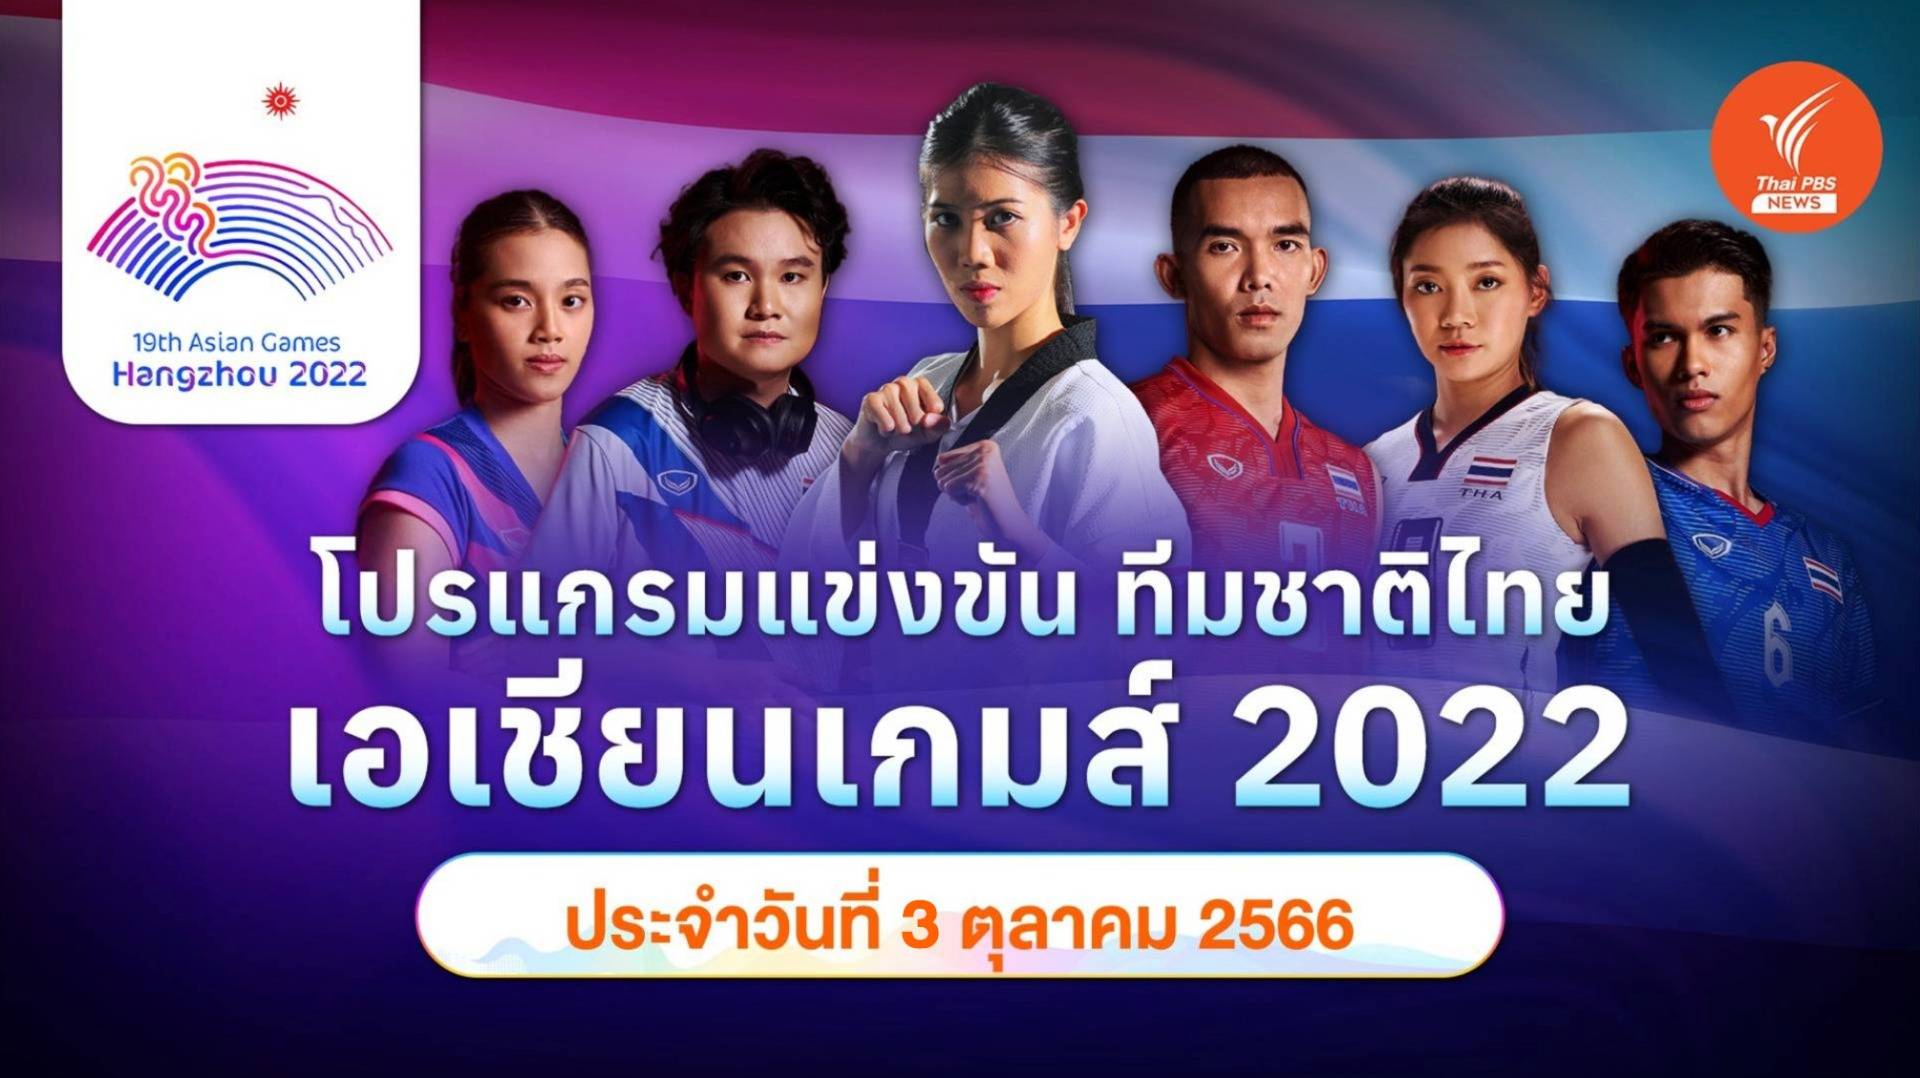 โปรแกรมการแข่งขัน เอเชียนเกมส์ 2022 ทัพนักกีฬาไทย วันที่ 3 ต.ค.2566